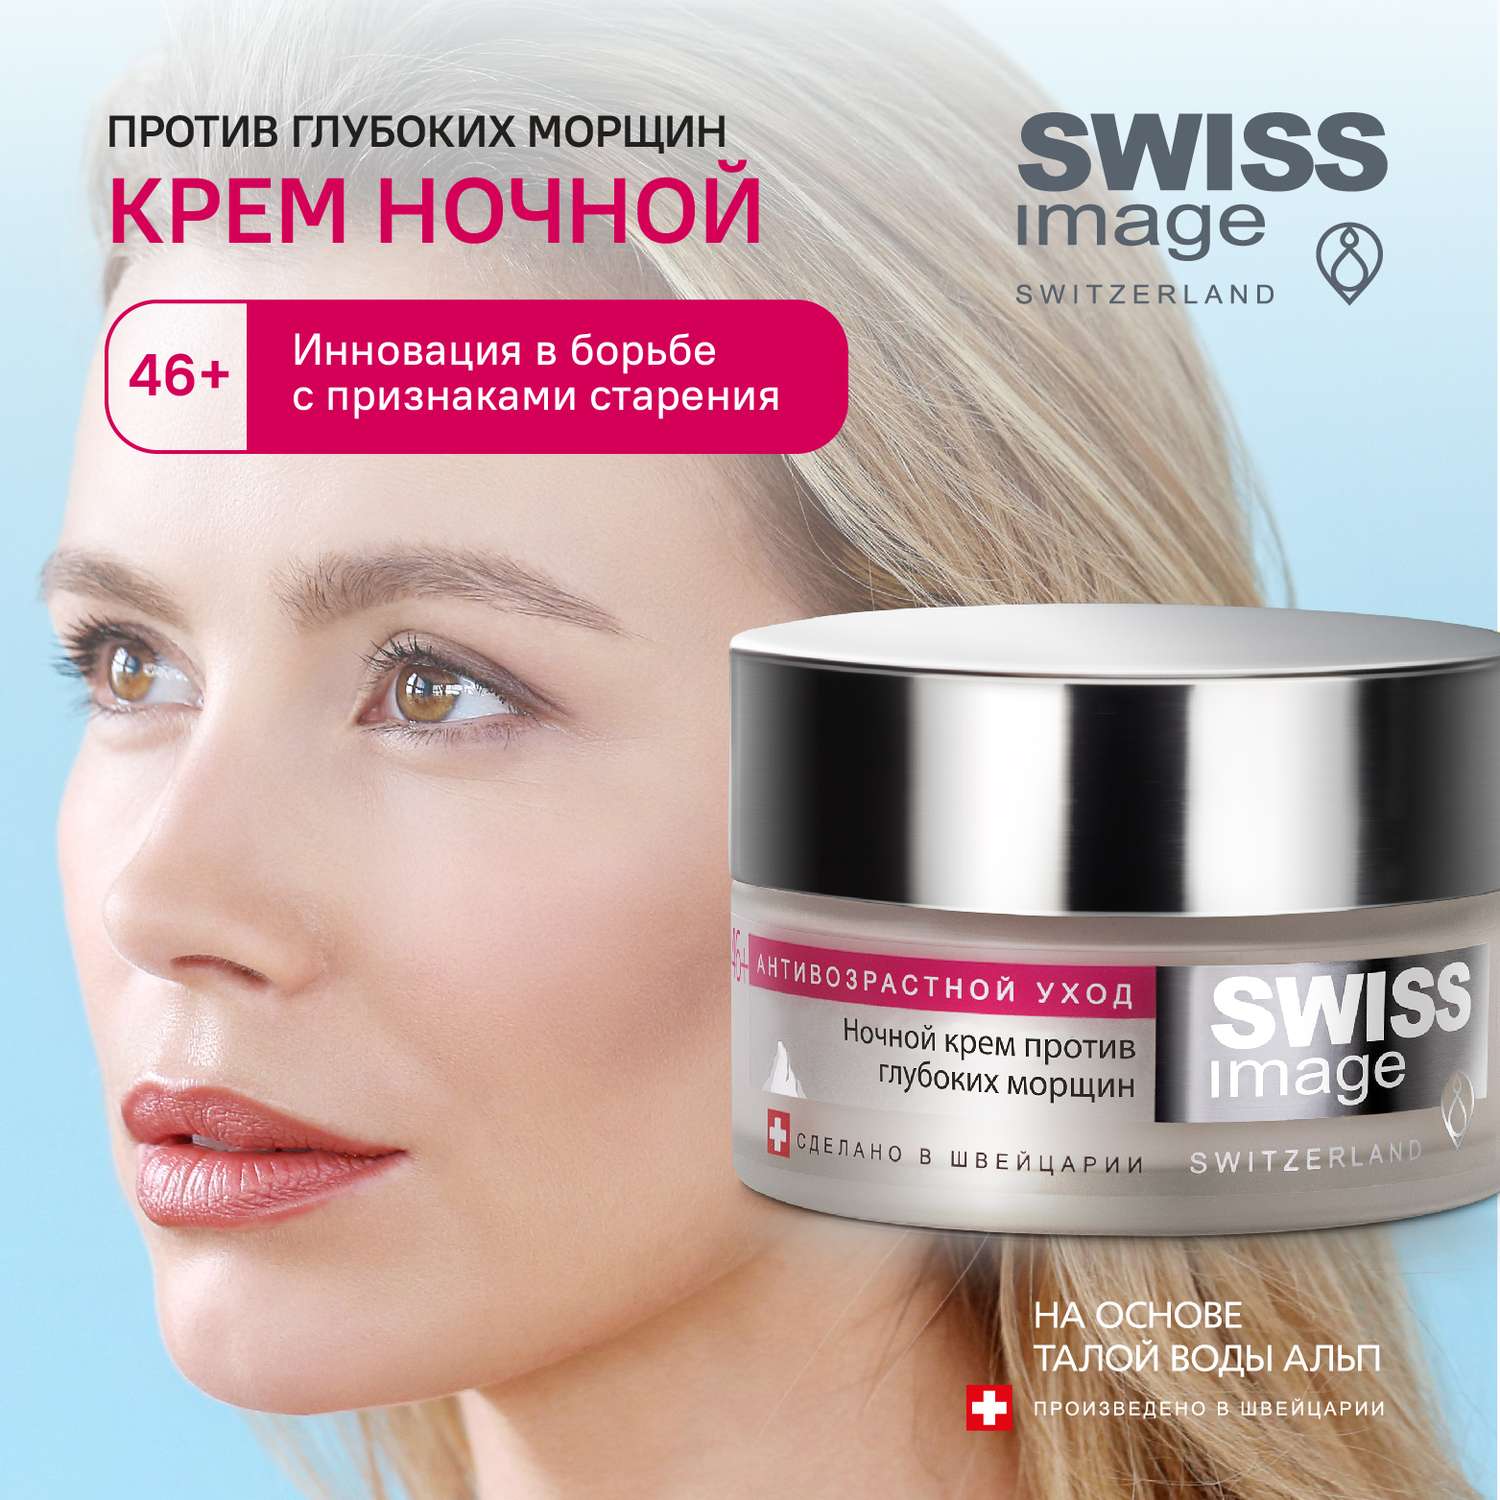 Ночной крем для лица Swiss image против глубоких морщин 46+ антивозрастной уход 50 мл - фото 1